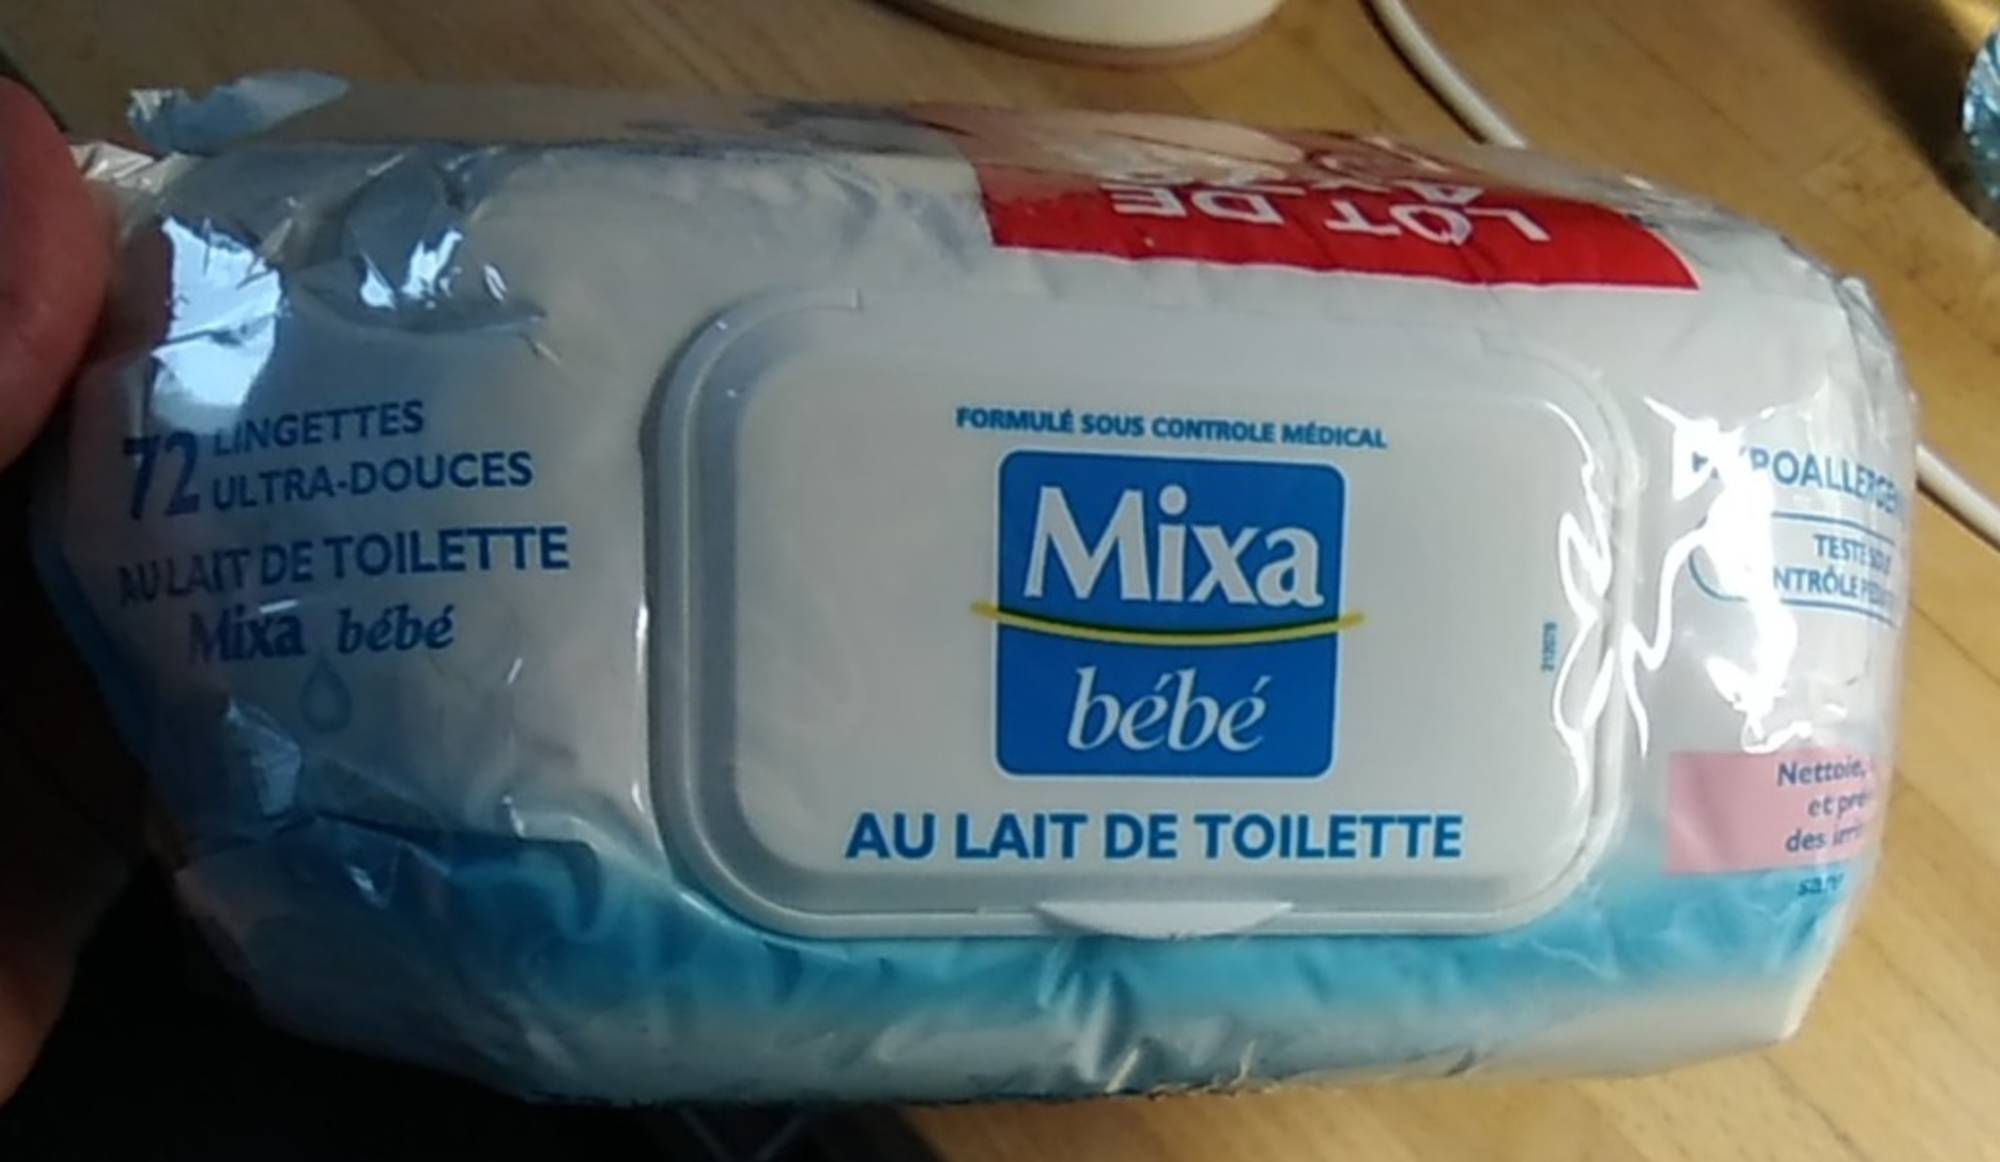 MIXA - Bébé au lait de toilette - Lingettes ultra-douces